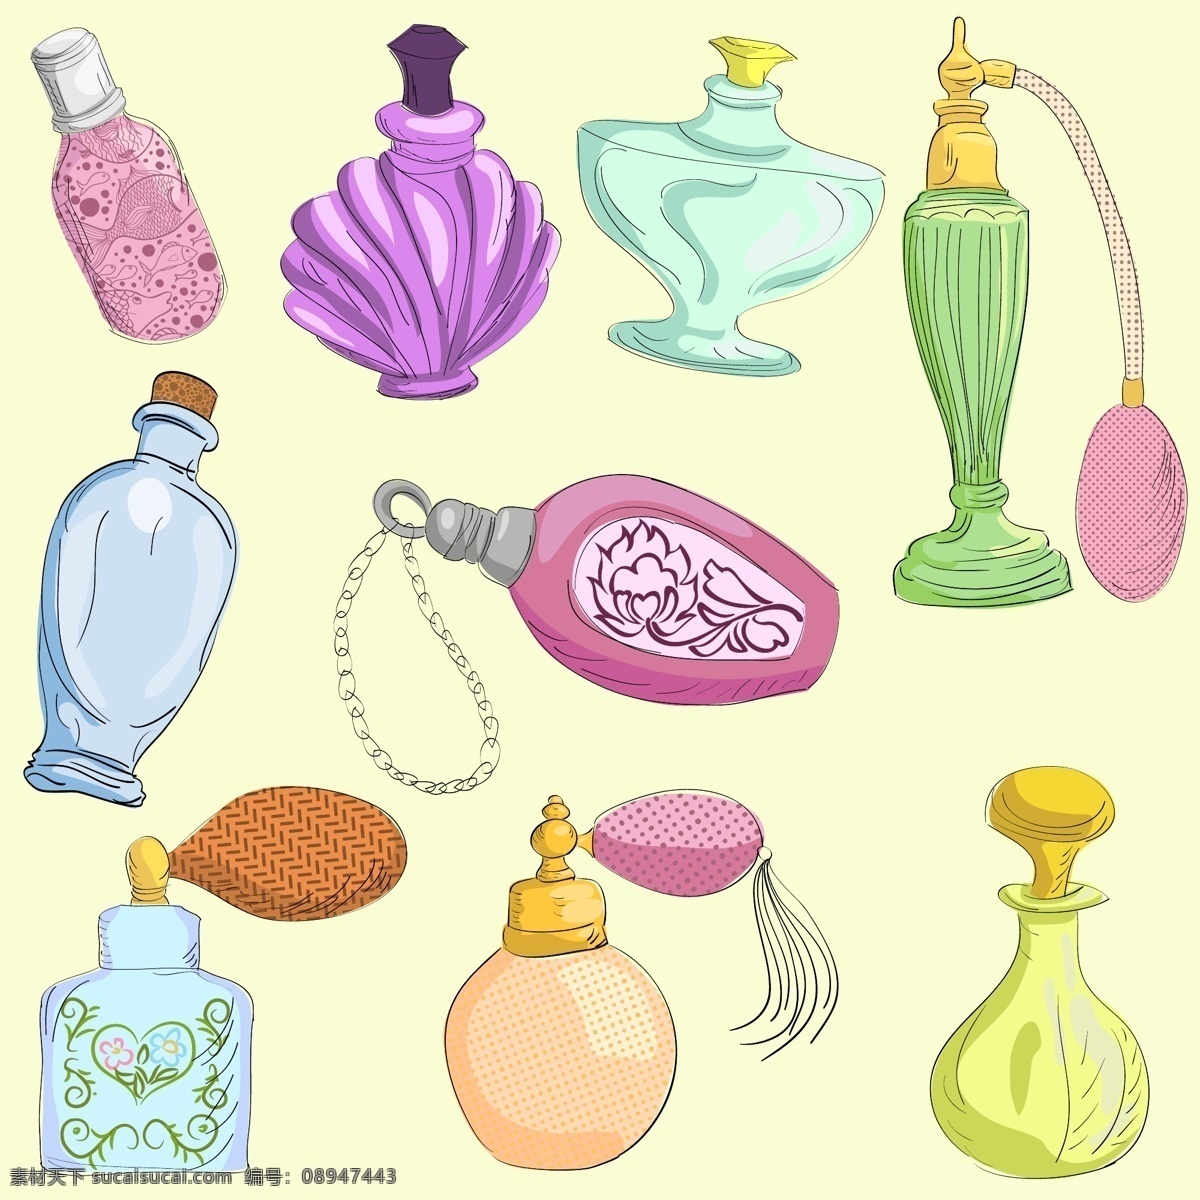 香水瓶收藏 时尚 美容 颜色 瓶子 彩色 沙龙 香水 产品 女性 魅力 配件 套装 物品 收藏